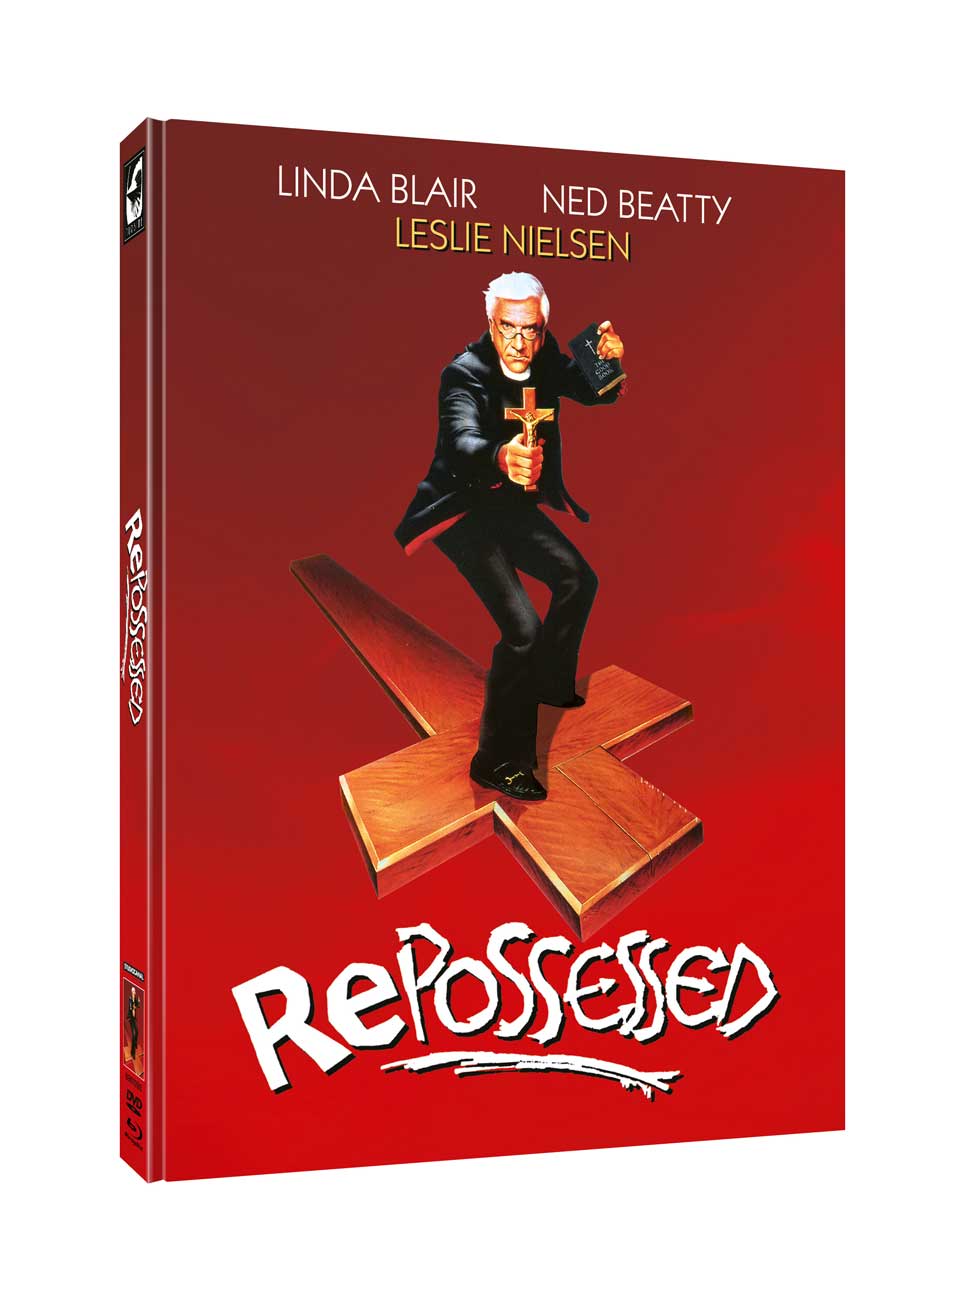 Von allen Geistern besessen - Repossessed | Mediabook (Blu-ray + DVD) Cover C - 750 Stück